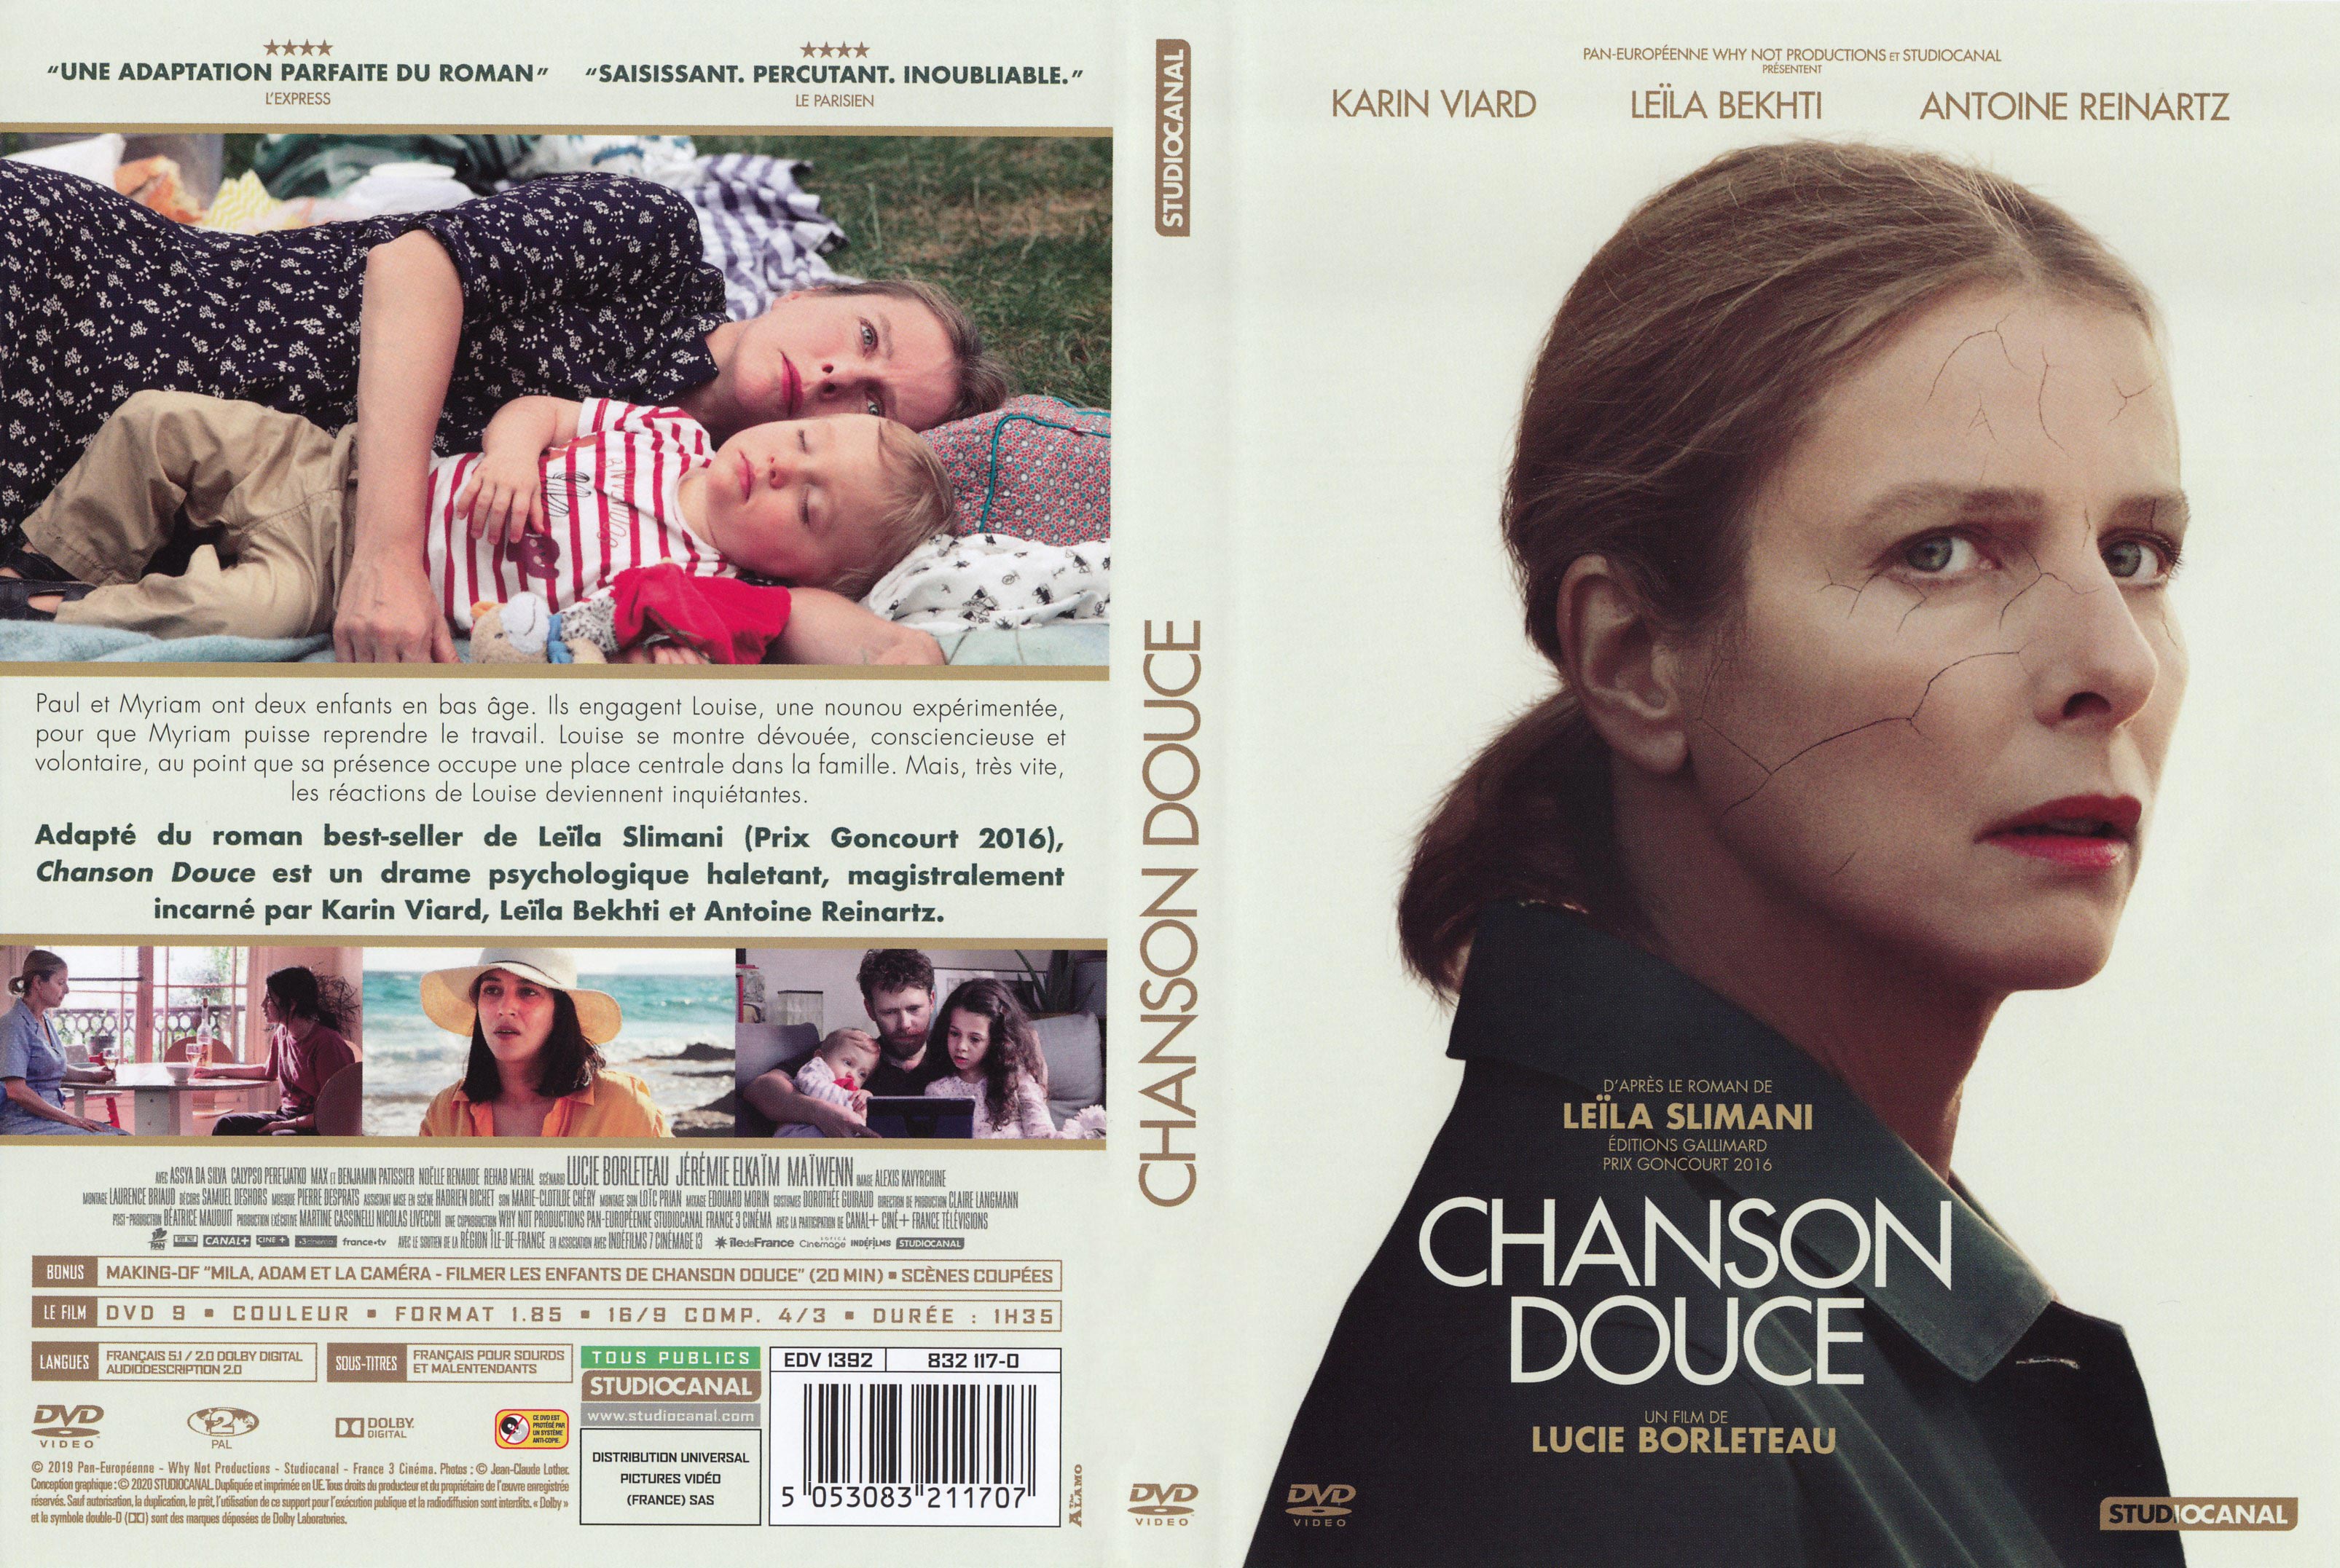 Jaquette DVD Chanson douce